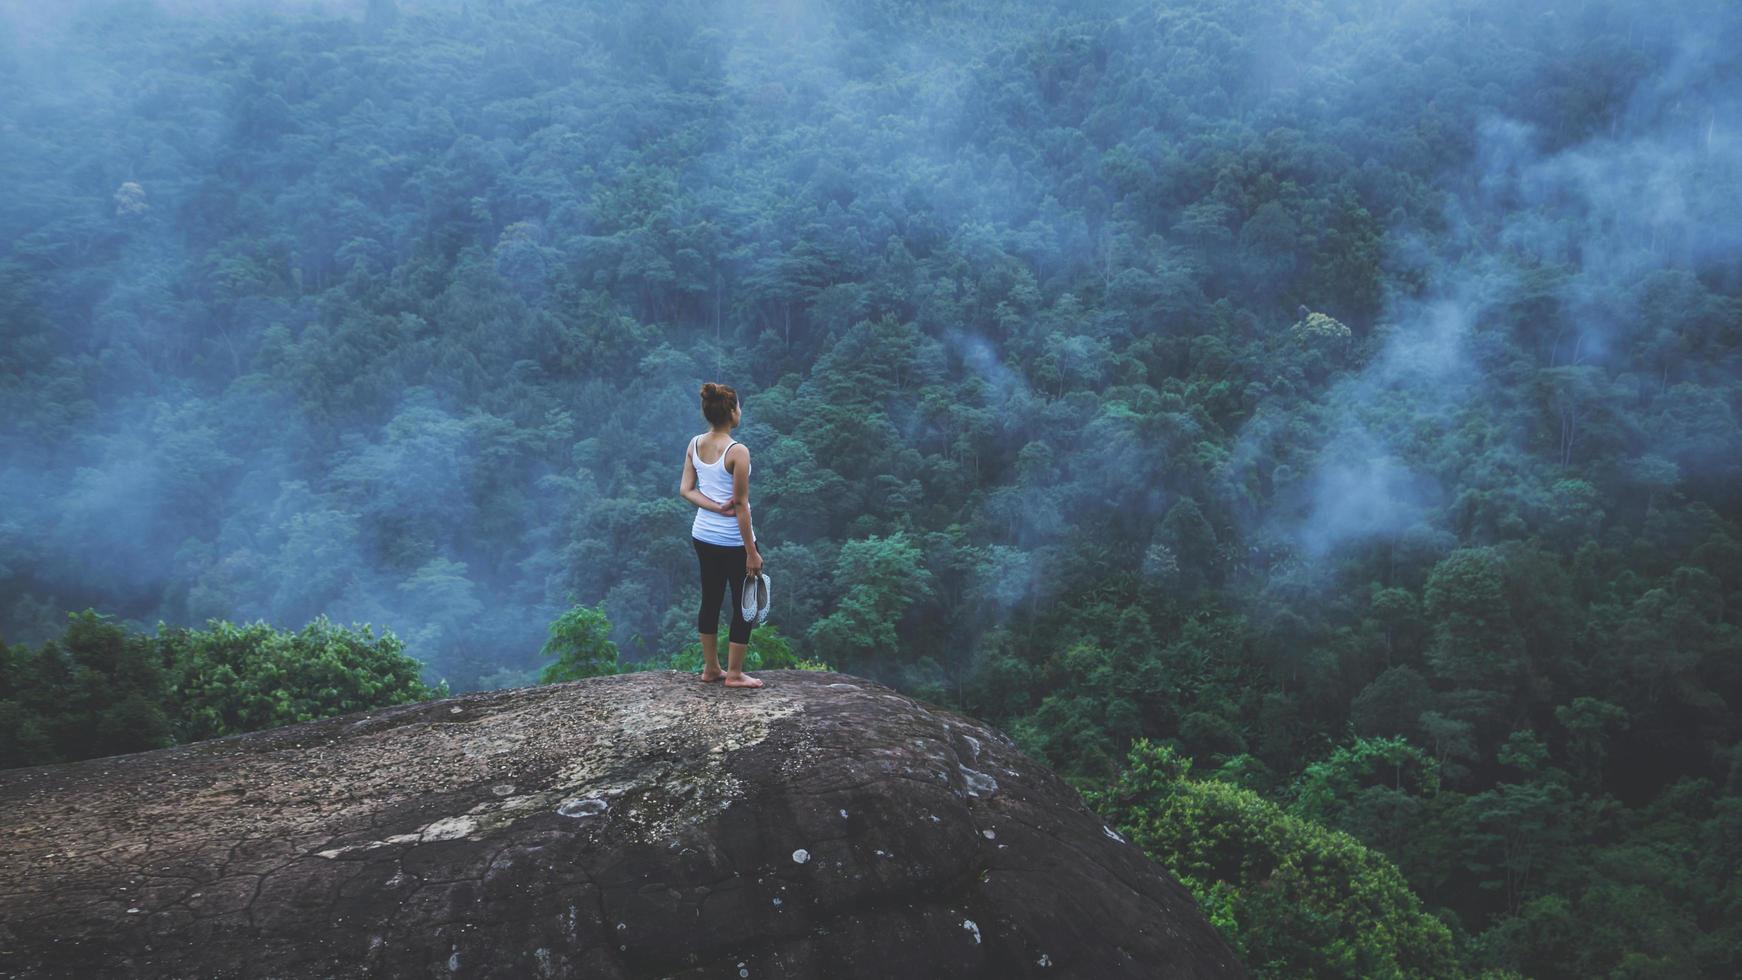 giovane donna esercita yoga in montagna. natura di viaggio donna asiatica. viaggi relax esercizi yoga tocco nebbia naturale sulla vetta della montagna. foto